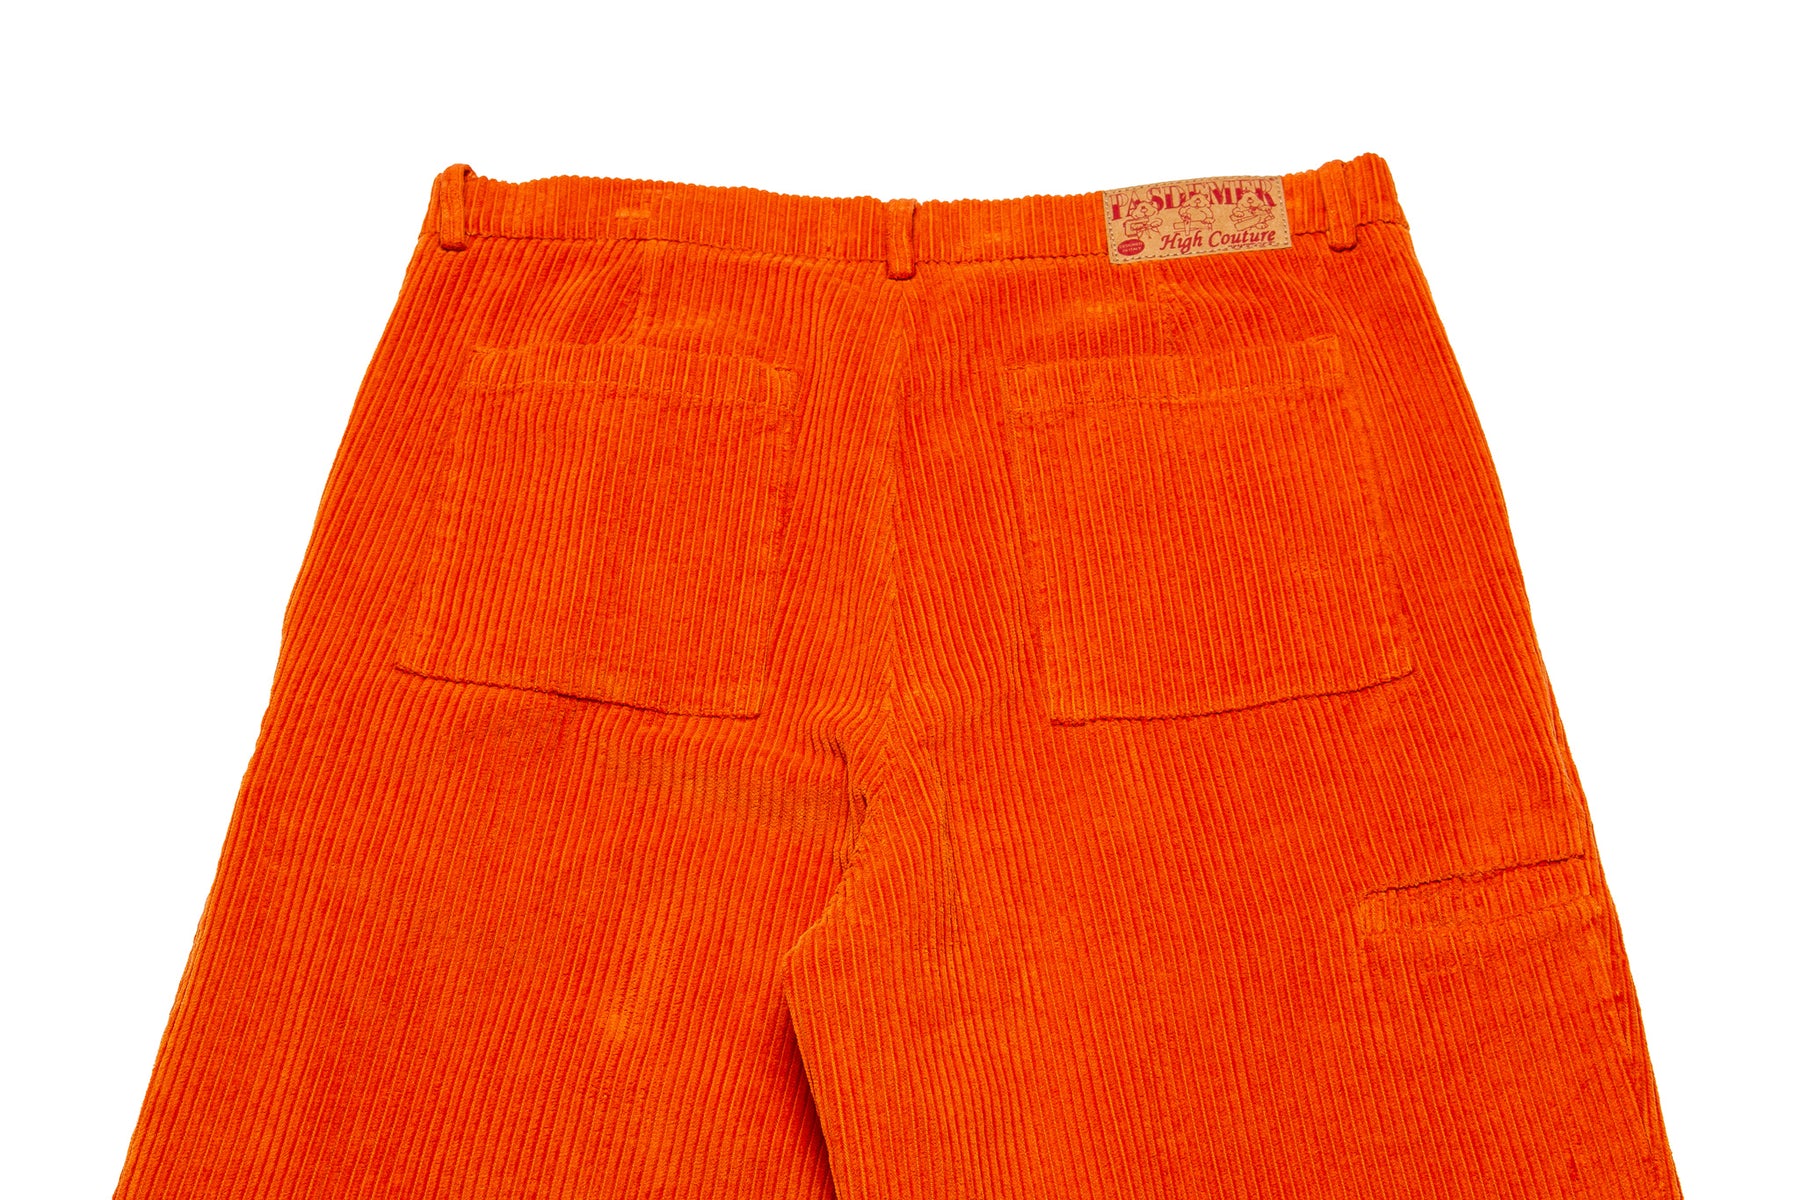 Pas de Mer Outdoors Pants "Orange"